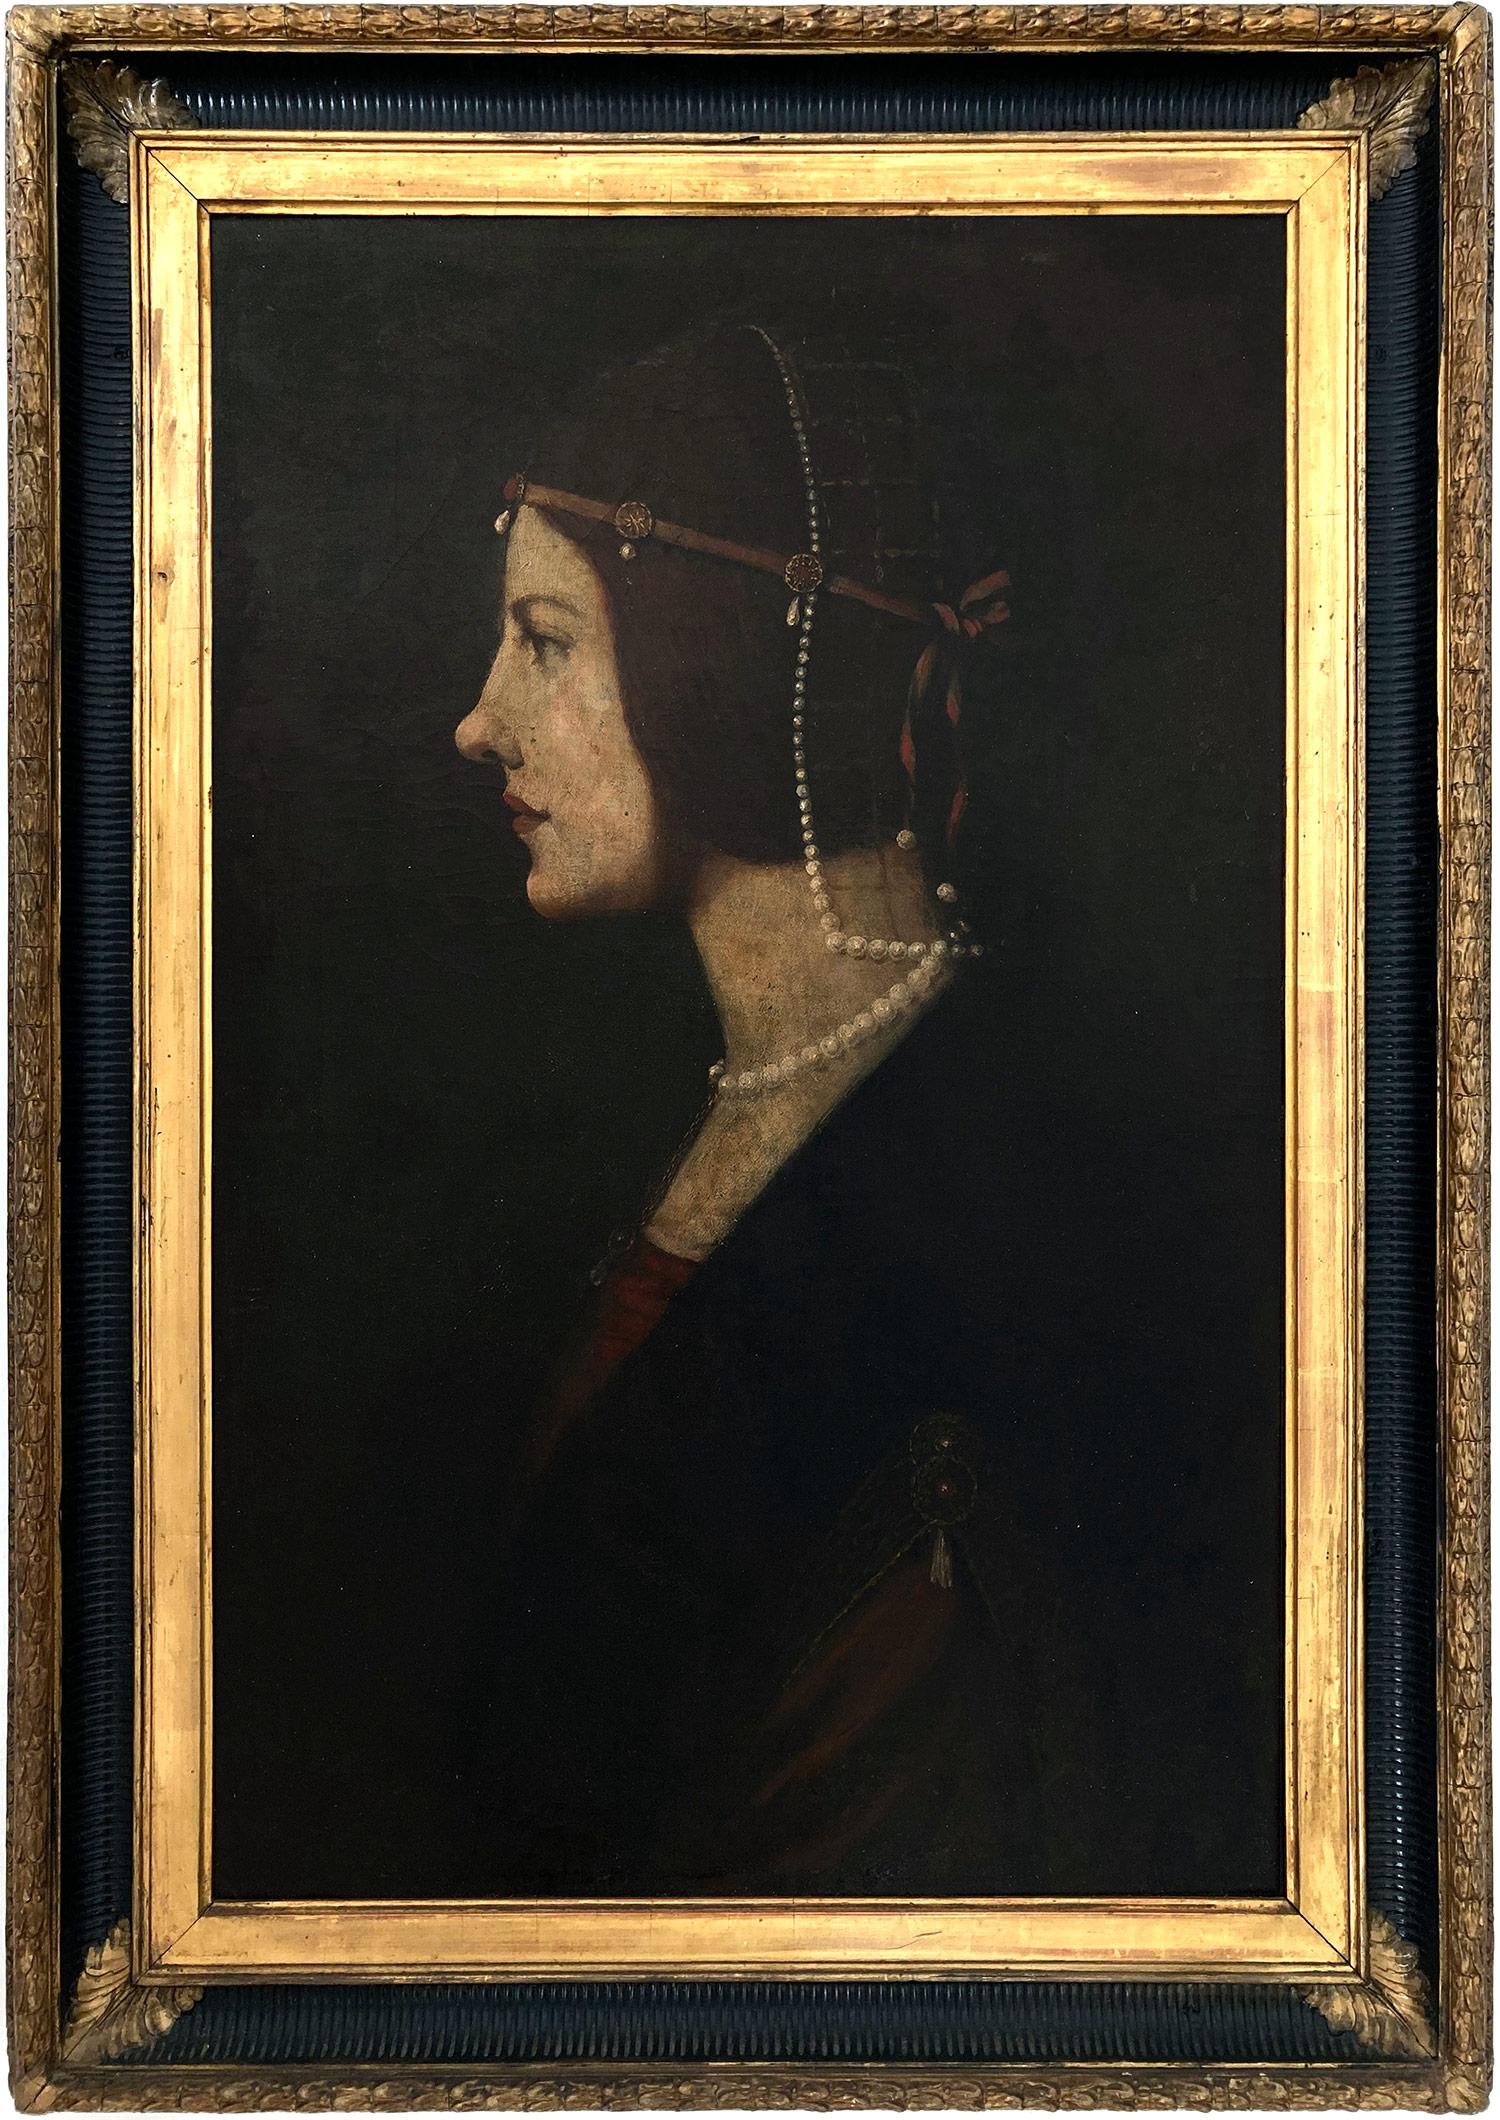 Copy of "Portrait of Beatrice dʼEste" by Leonardo da Vinci created 15th Century